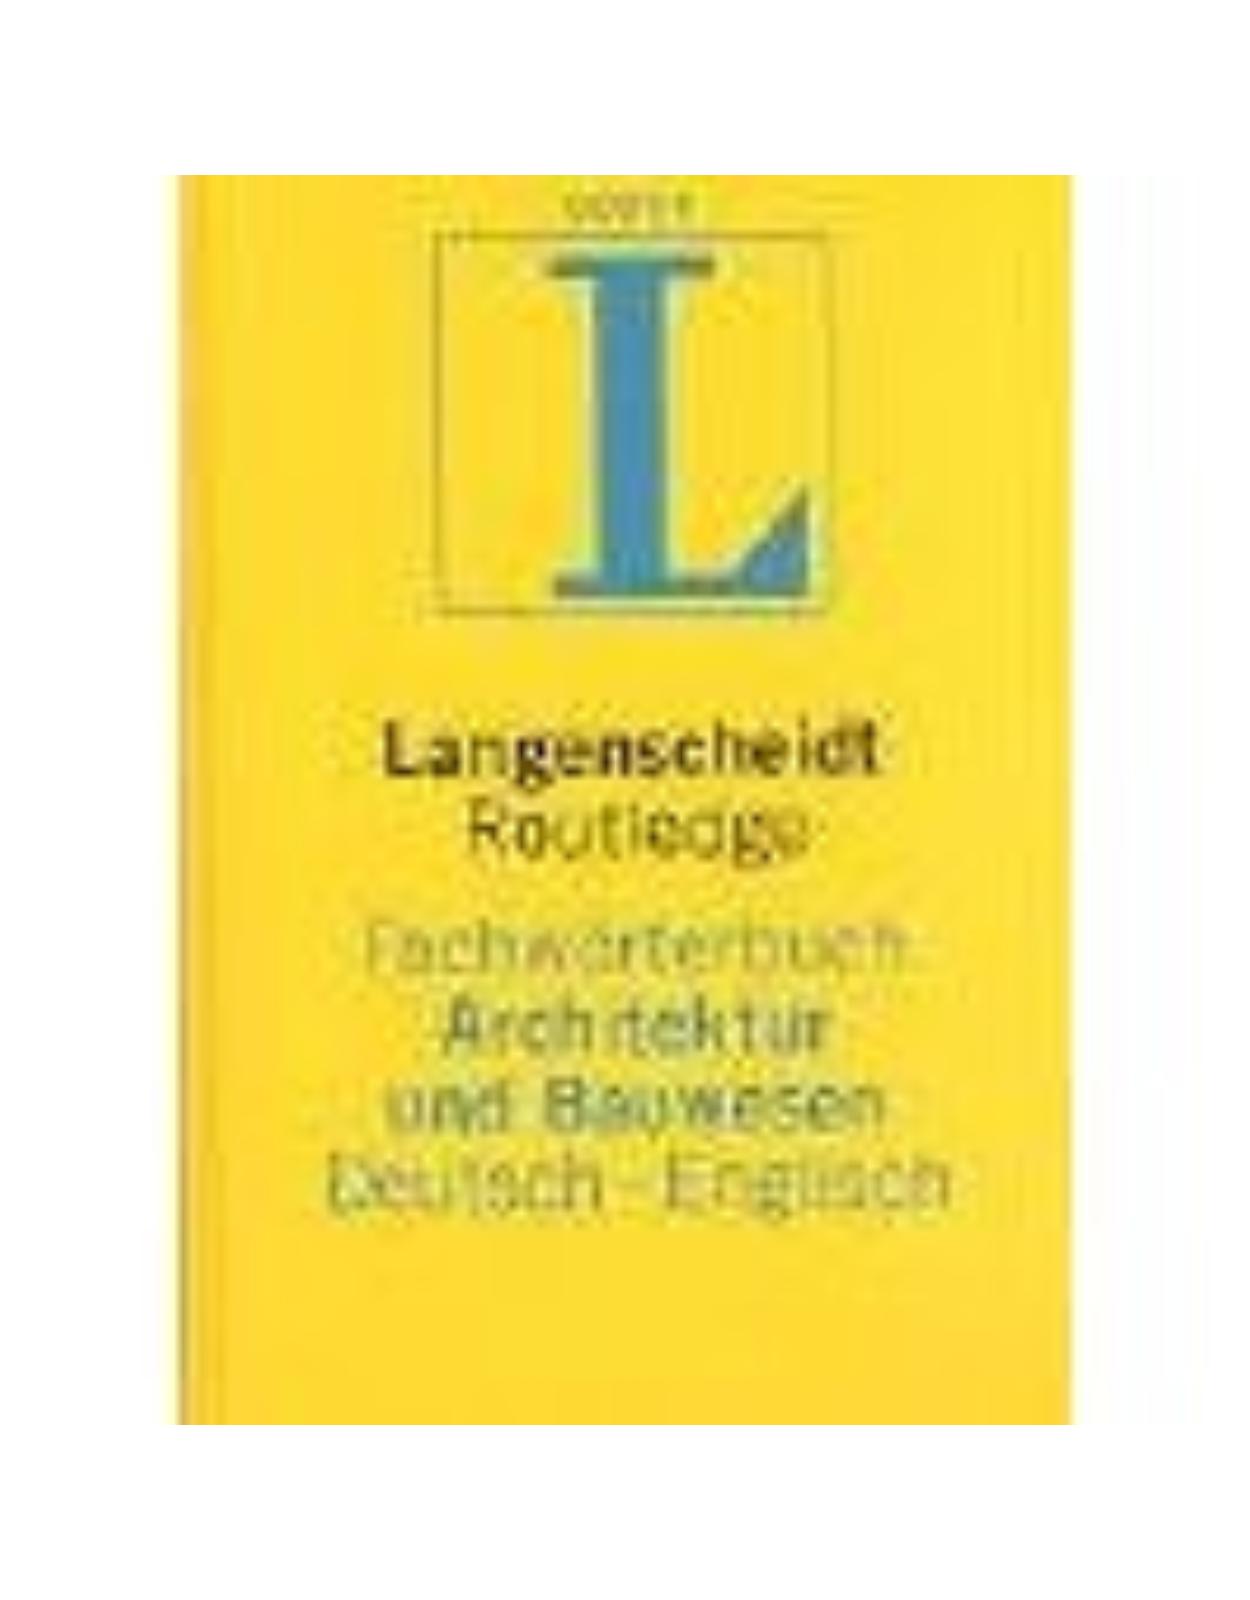 Langenscheidt Routledge Fachworterbuch Architektur und Bauwesen.